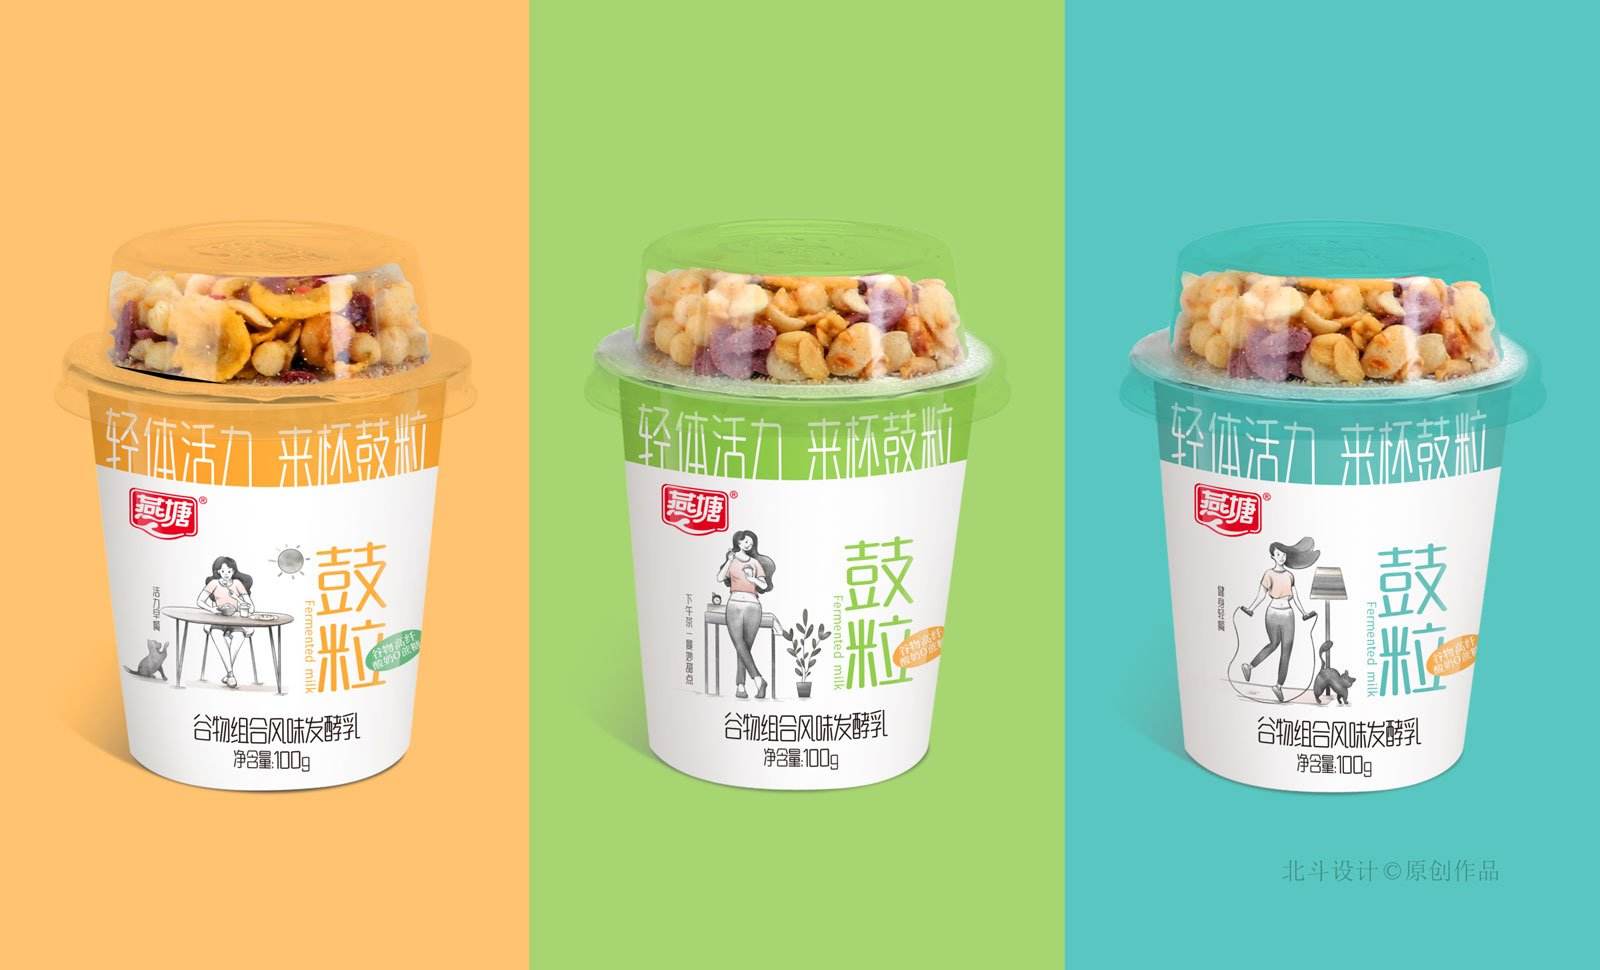 燕塘谷粒酸奶包装设计x北斗设计原创作品 飞特网 会员原创食品包装设计